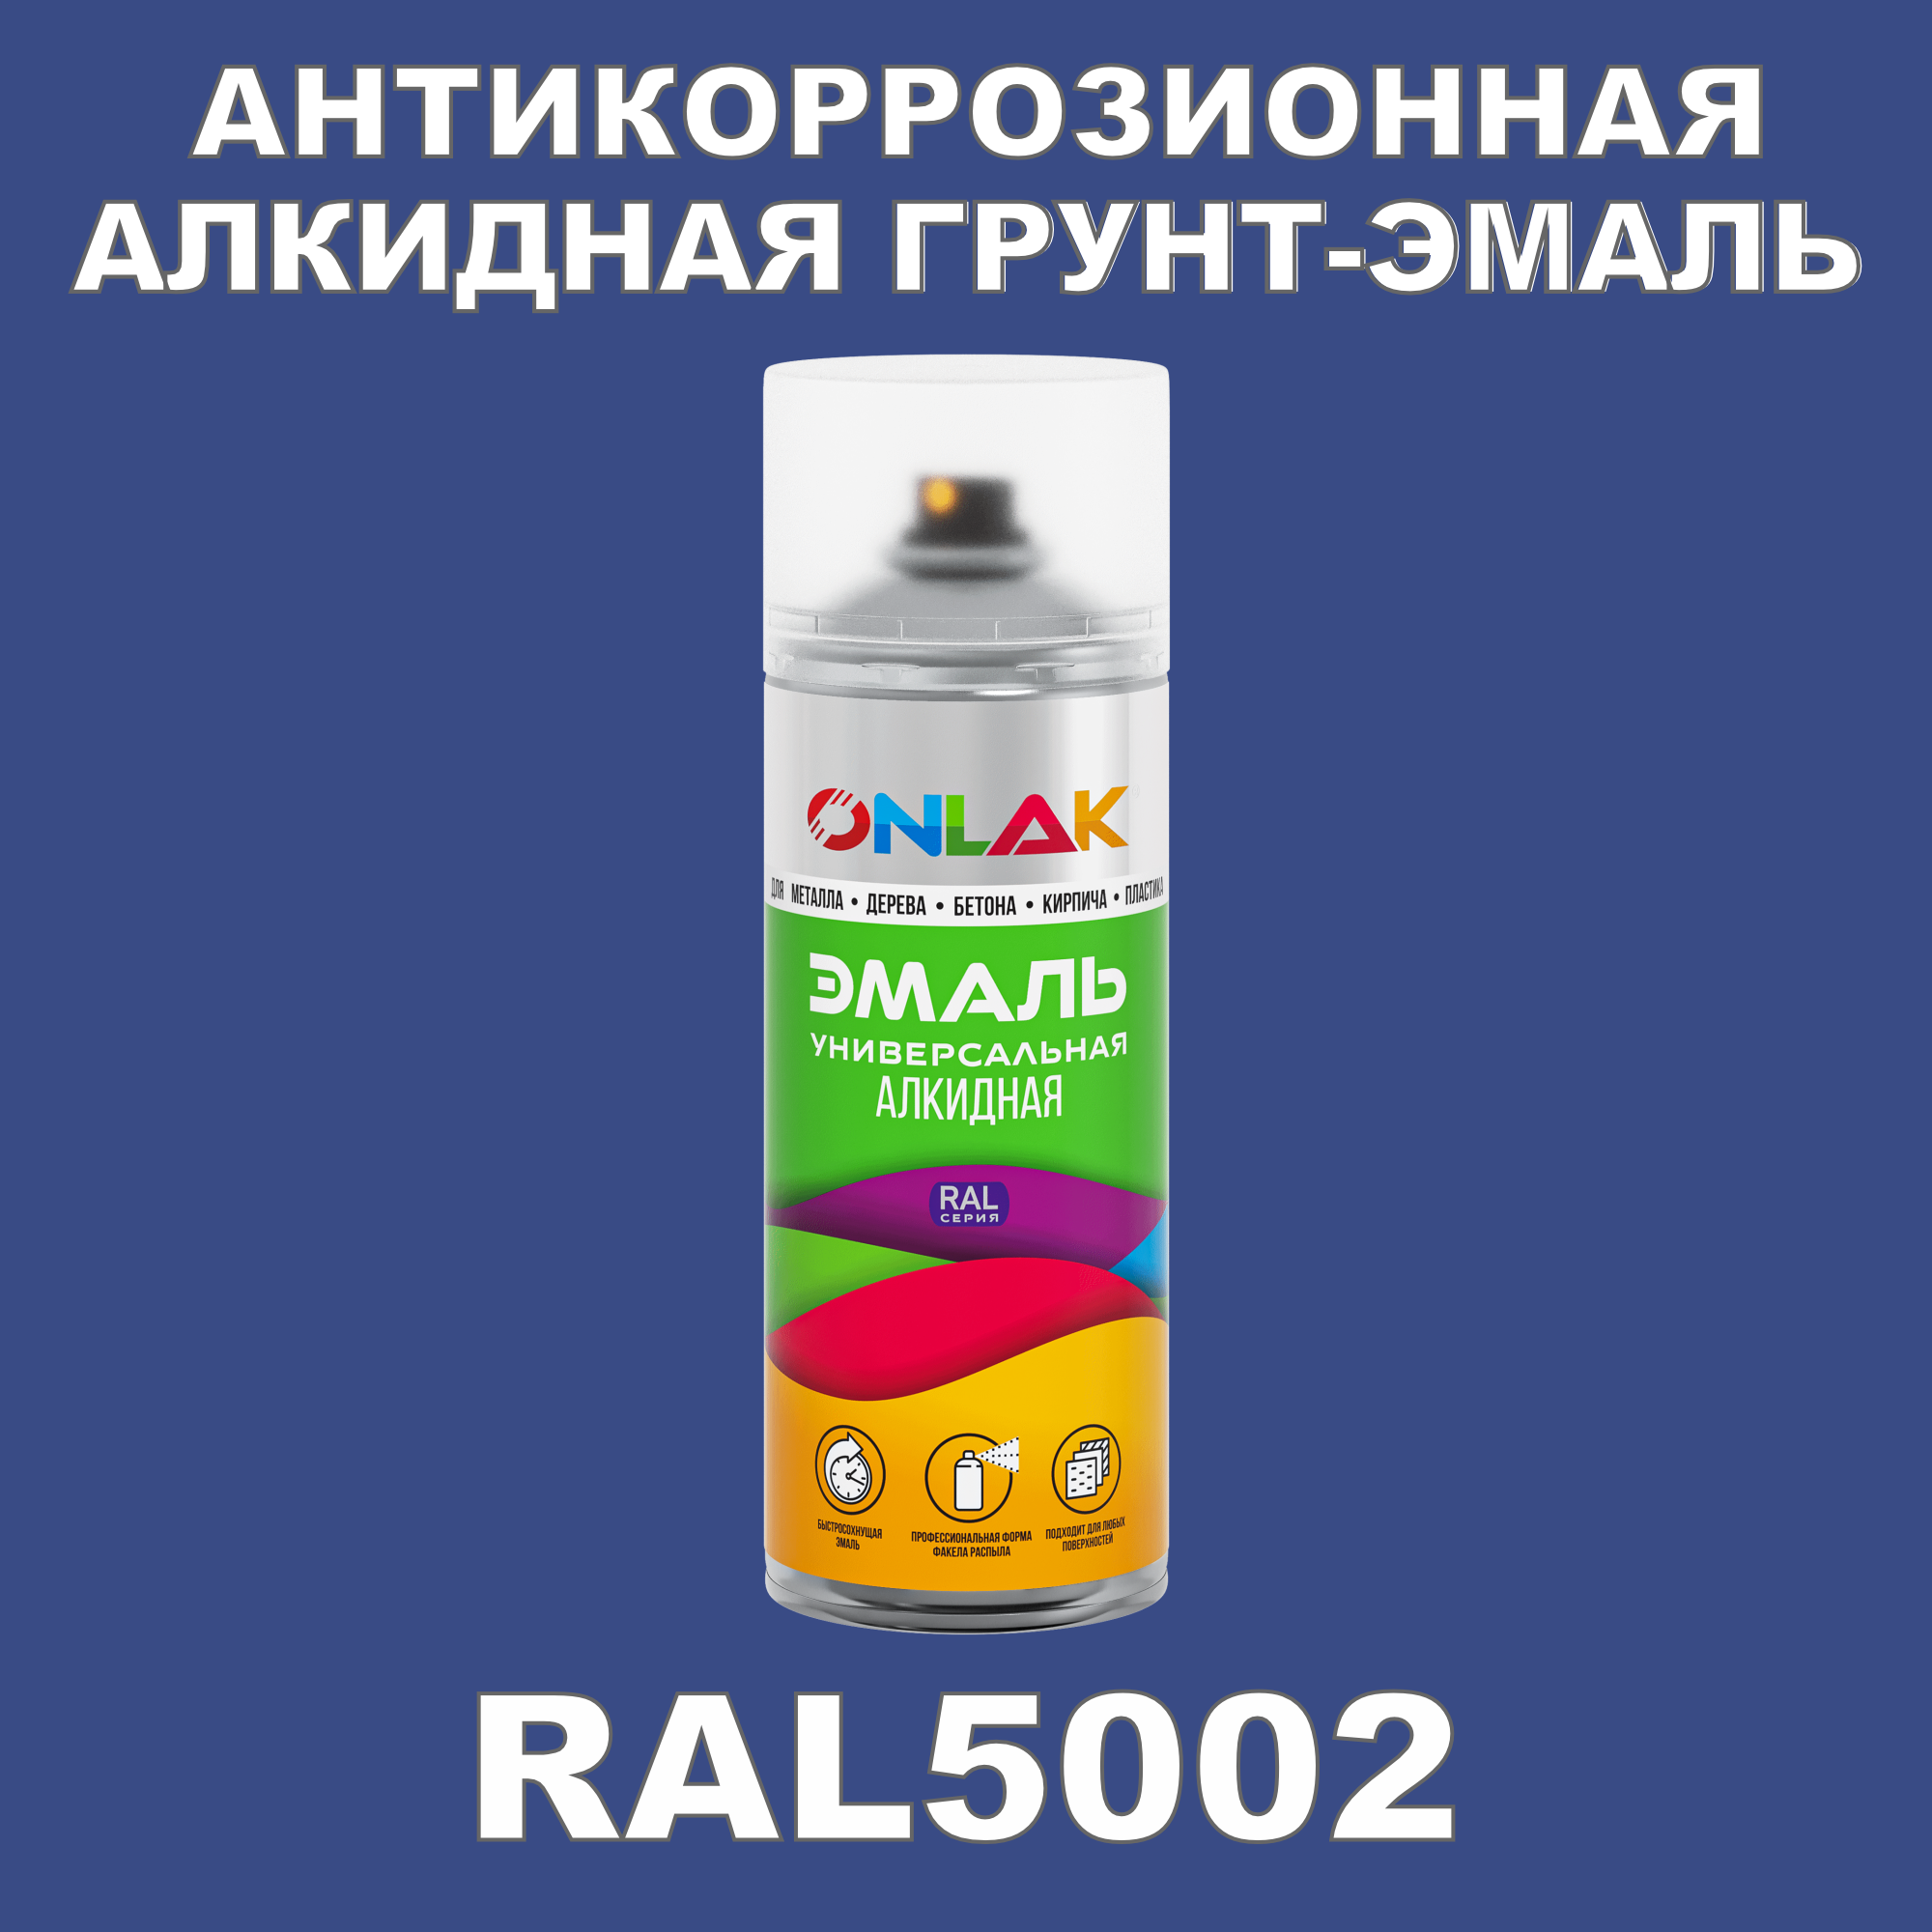 Антикоррозионная грунт-эмаль ONLAK RAL5002 матовая для металла и защиты от ржавчины